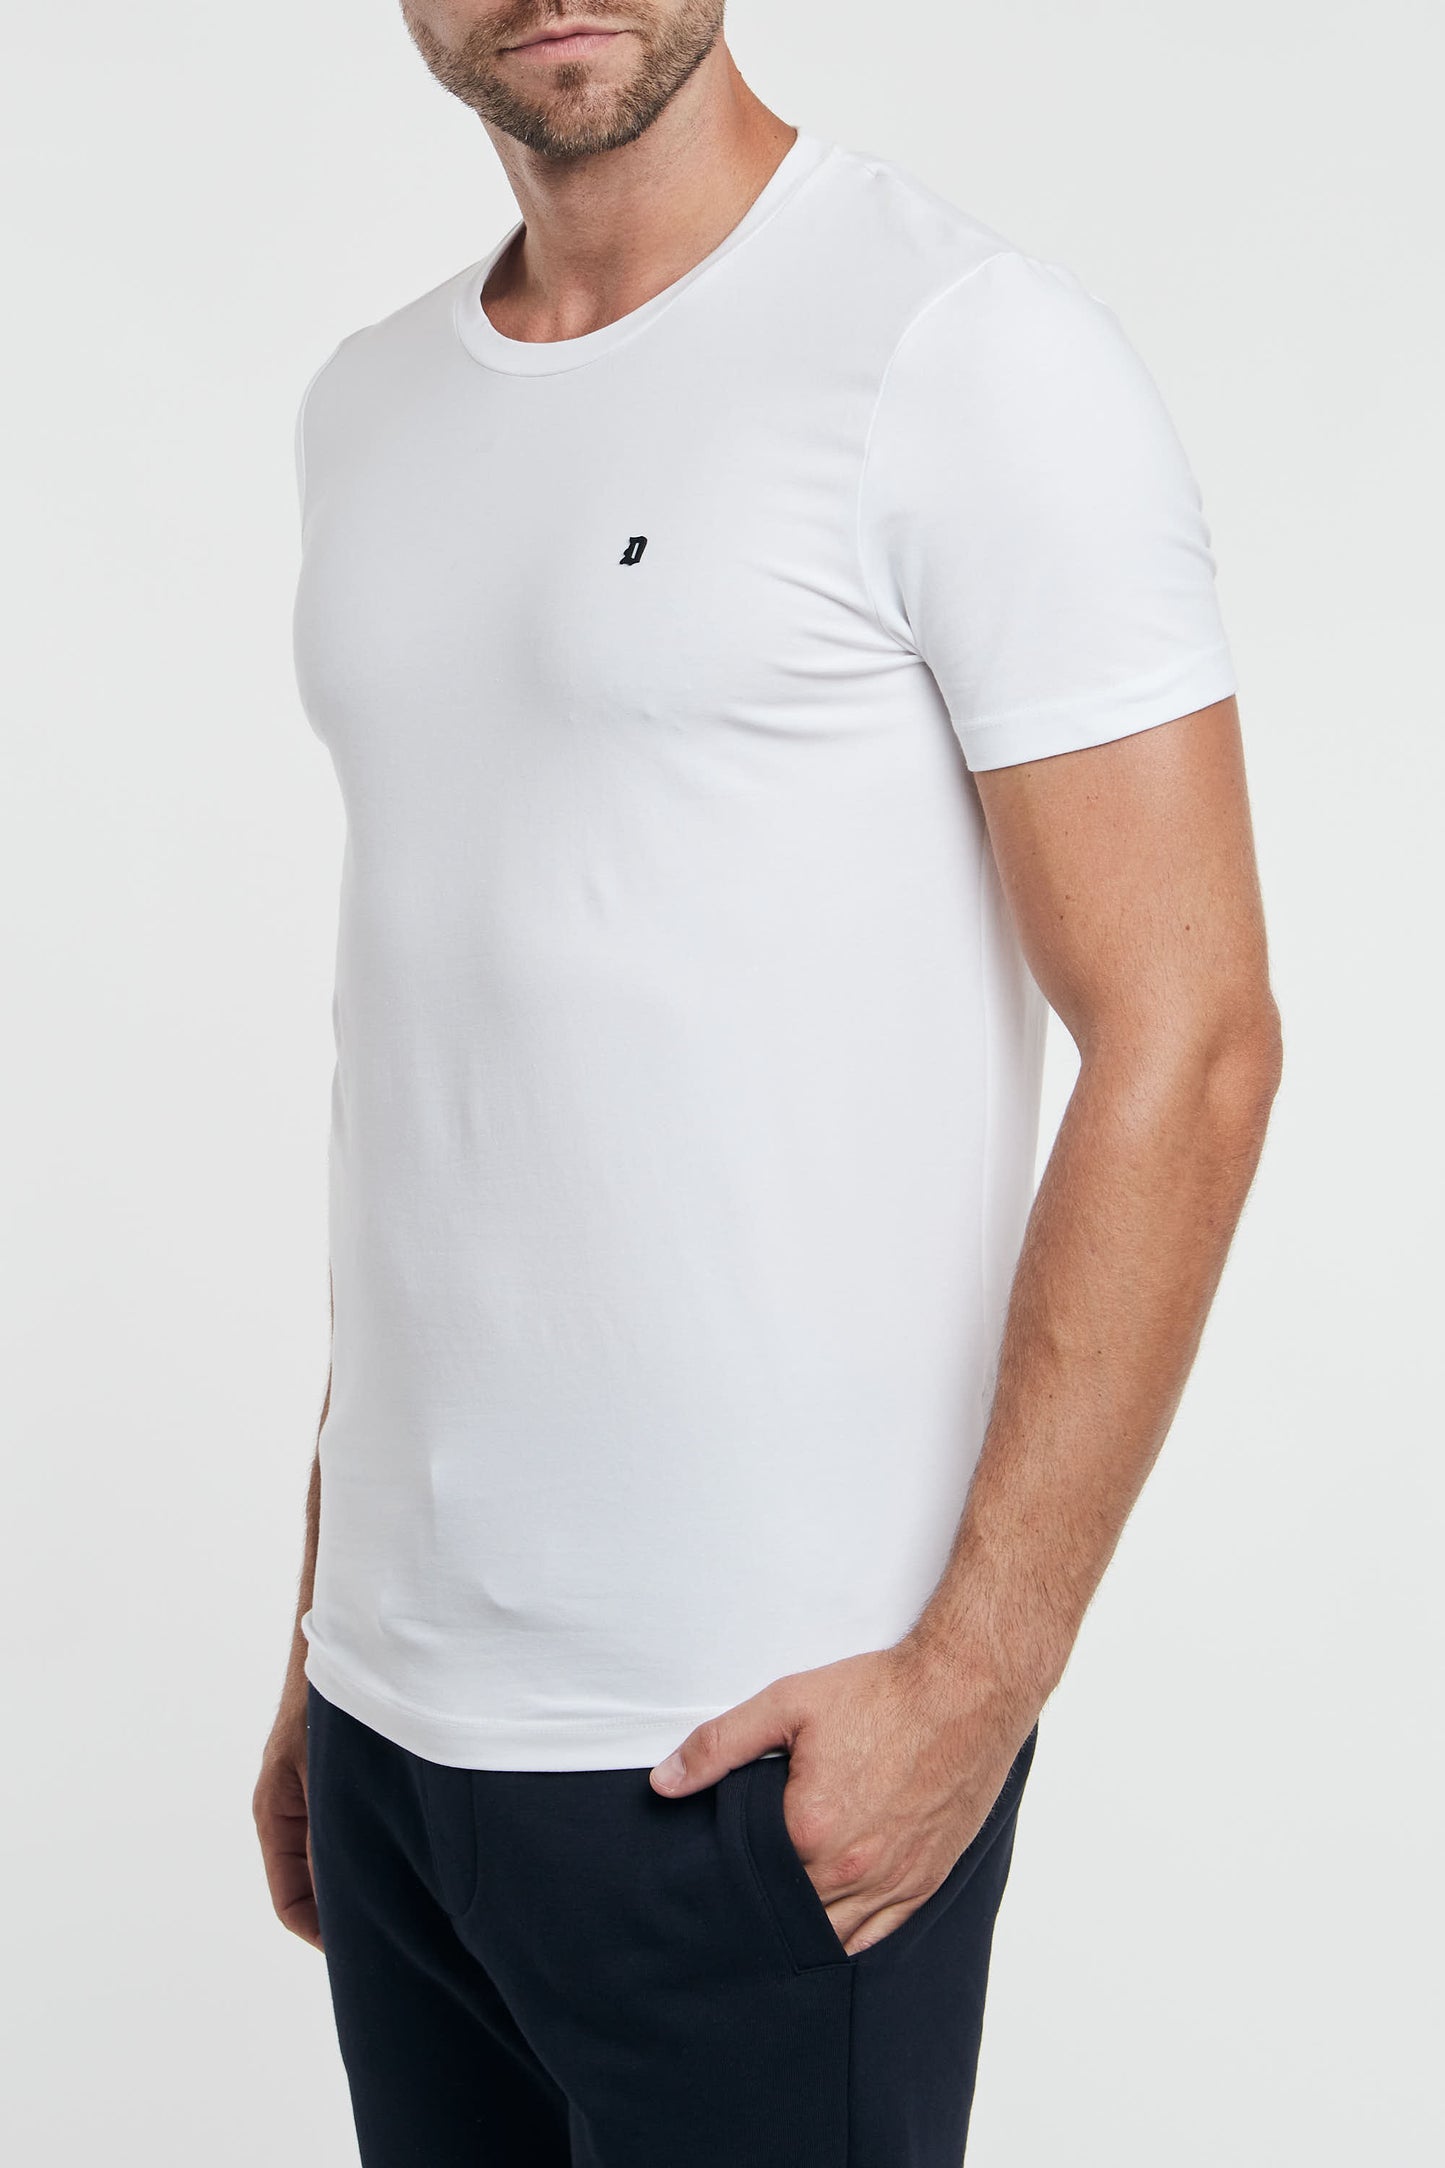  Dondup T-shirt Bianco 92896-17800 Bianco Uomo - 1